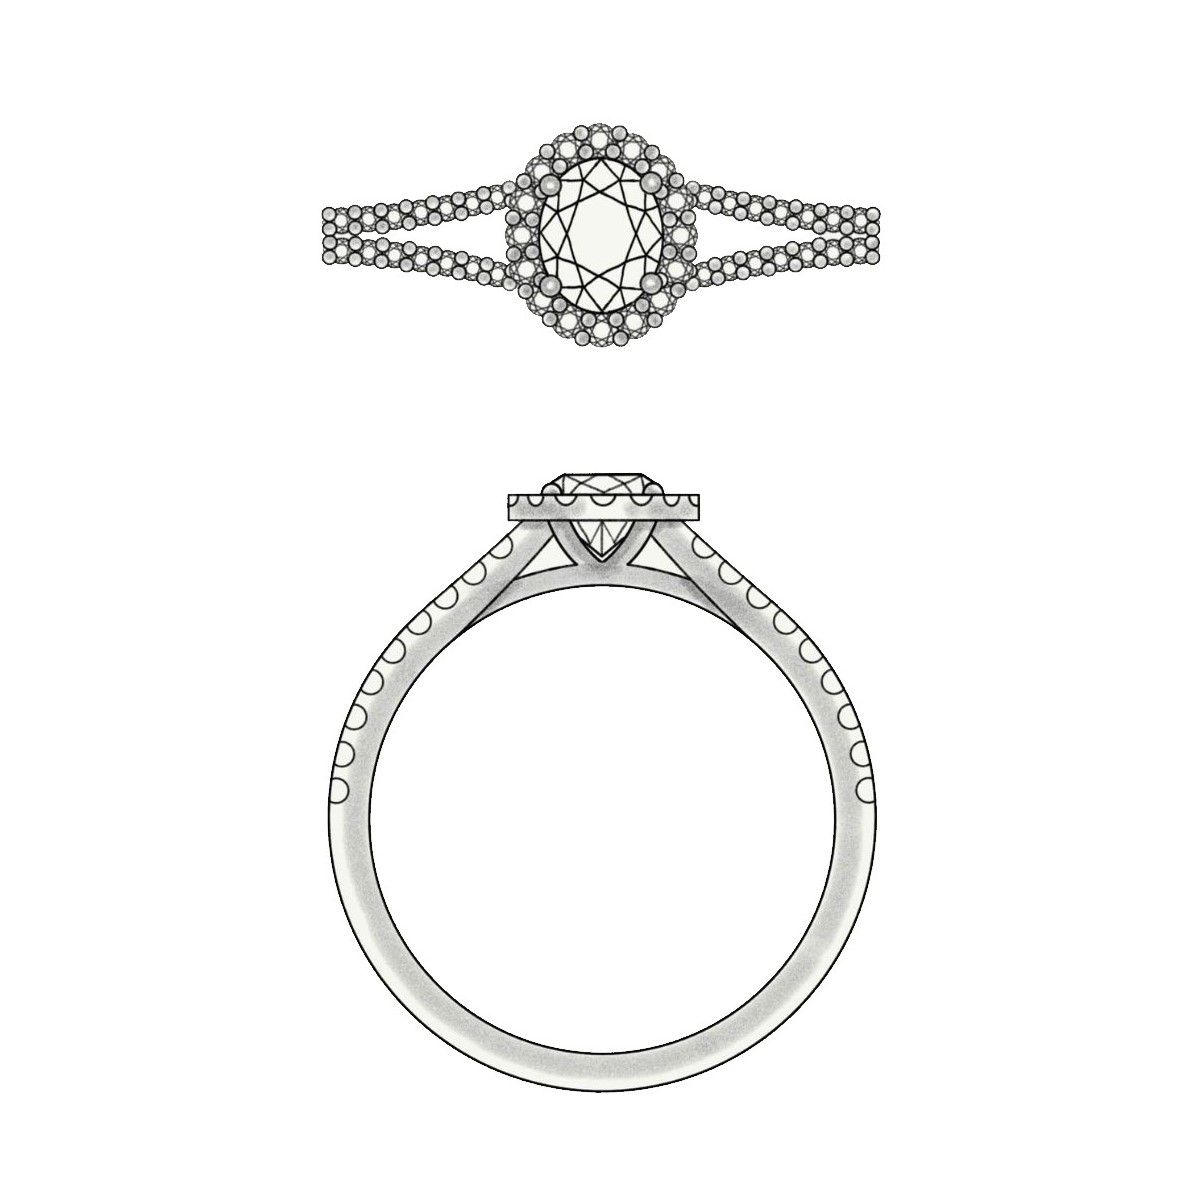 Split-shank setting engagement ring designs | CustomMade.com